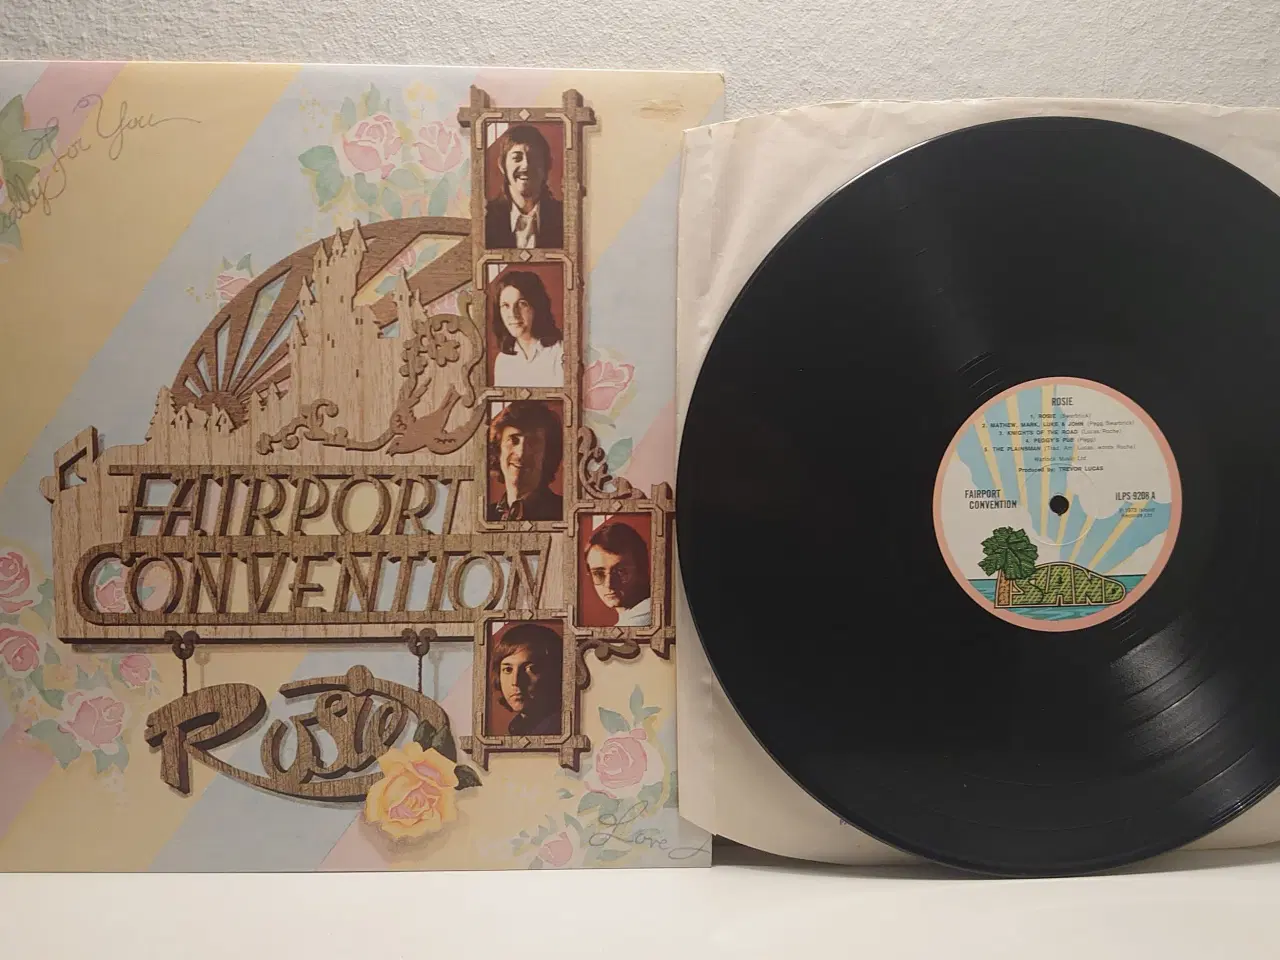 Billede 1 - Fairport Convention: Rosie. LP, UK 1973. 